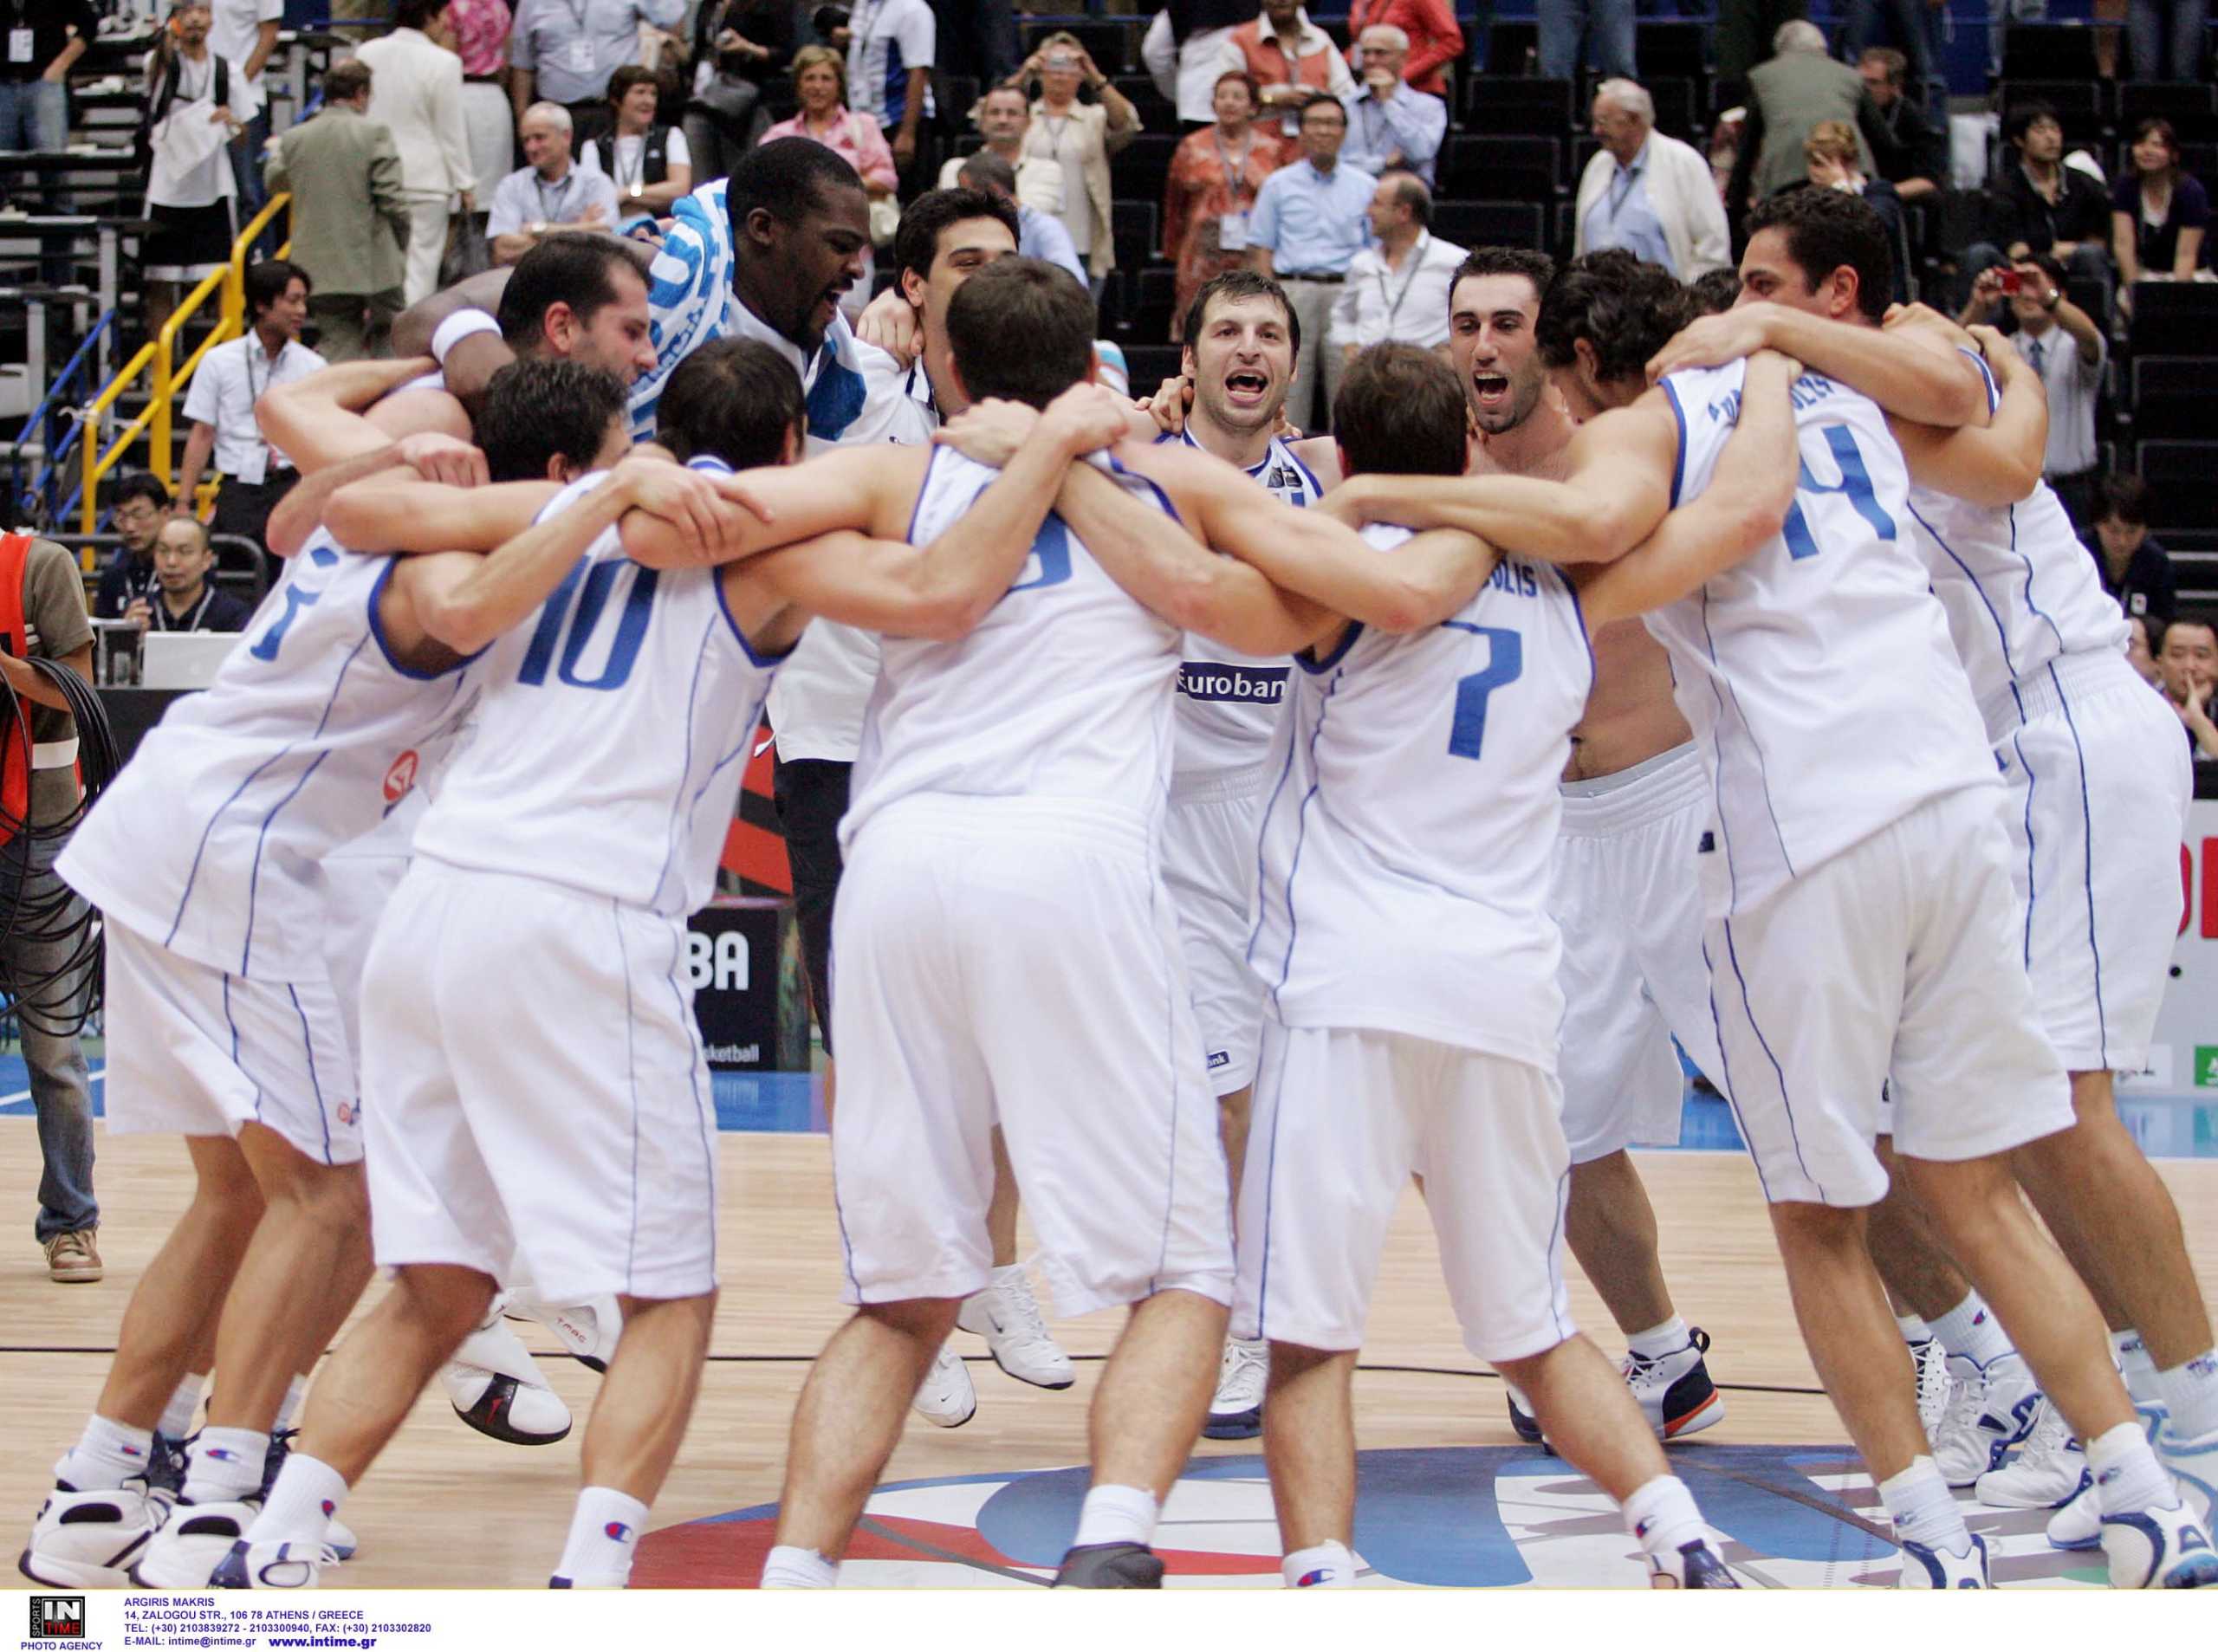 Η FIBA προβάλλει τη νίκη της Εθνικής επί των ΗΠΑ! “Επιτυχία ανάλογη του Euro 2004”